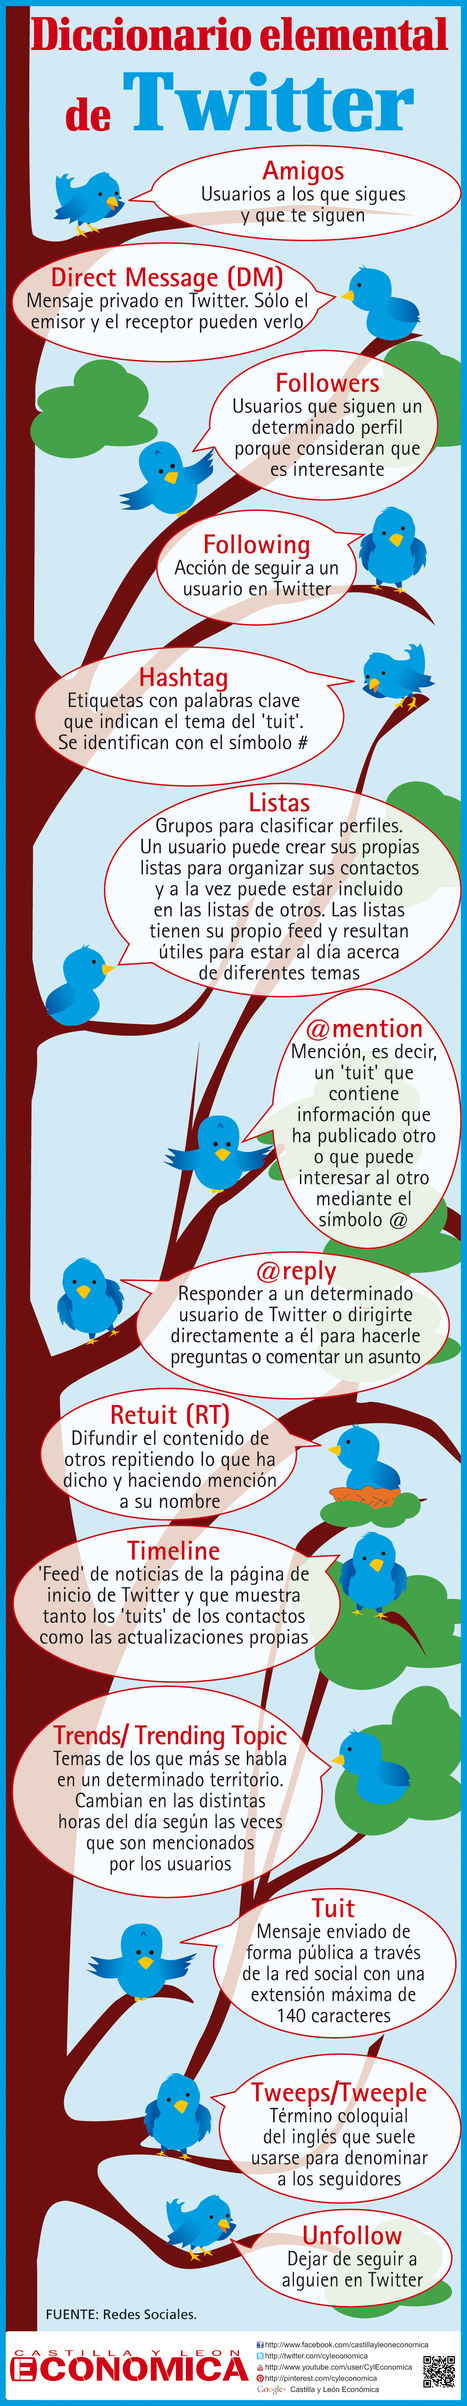 Diccionario elemental de Twitter #infografia ... - TICs y Formación | Pedalogica: educación y TIC | Scoop.it